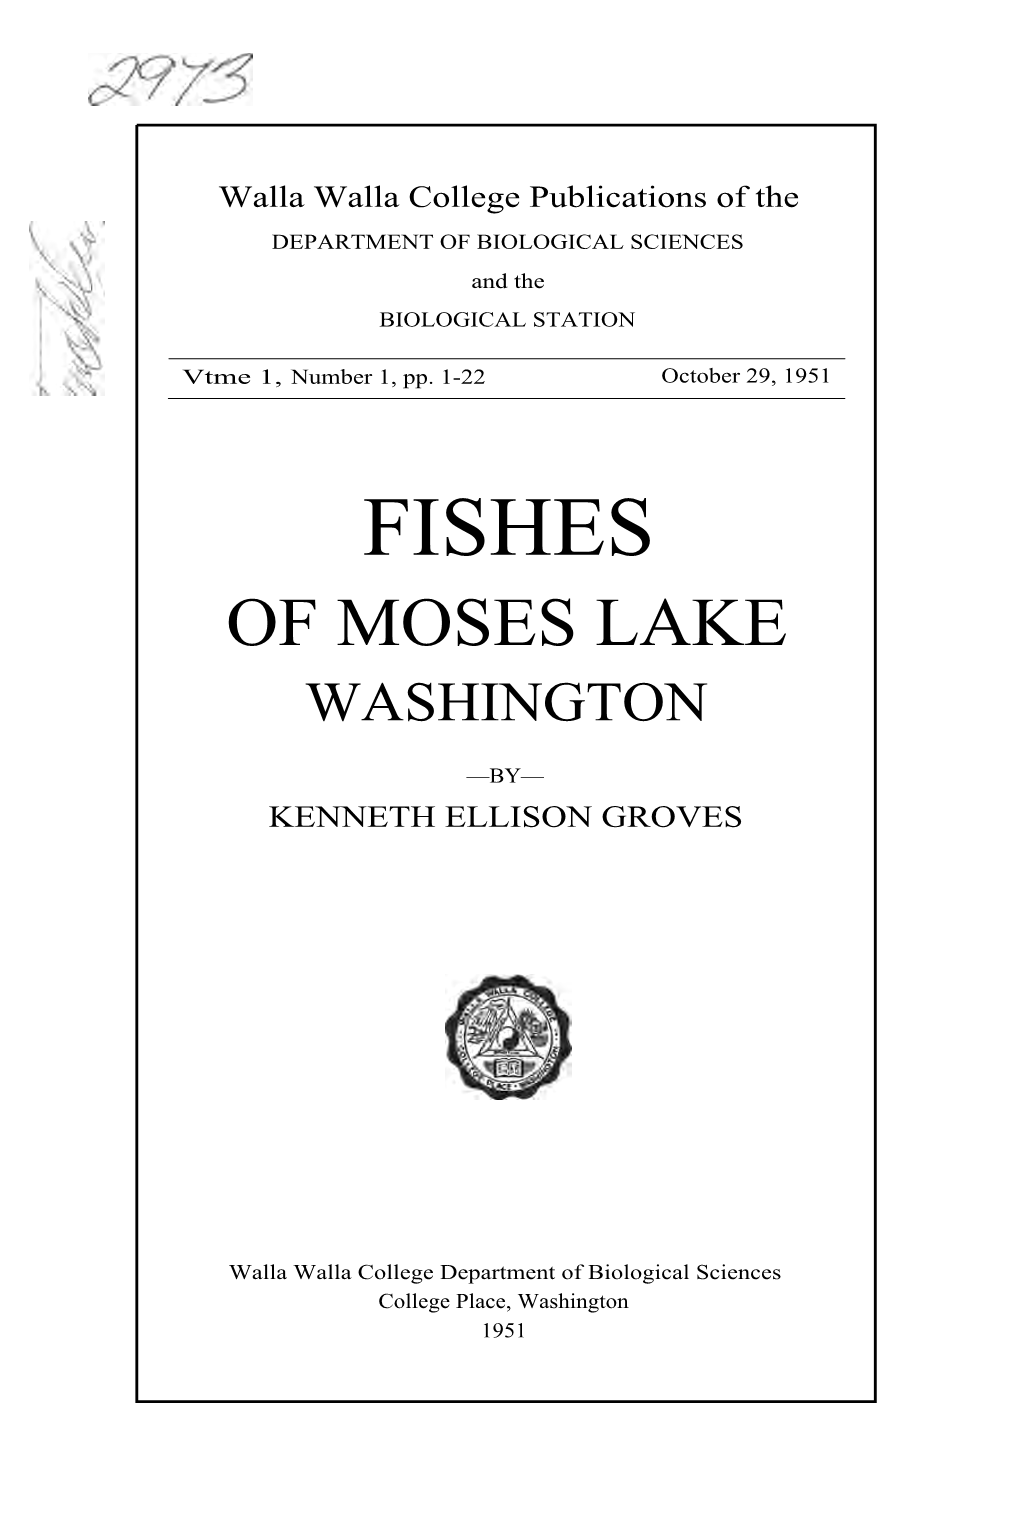 Fishes of Moses Lake Washington